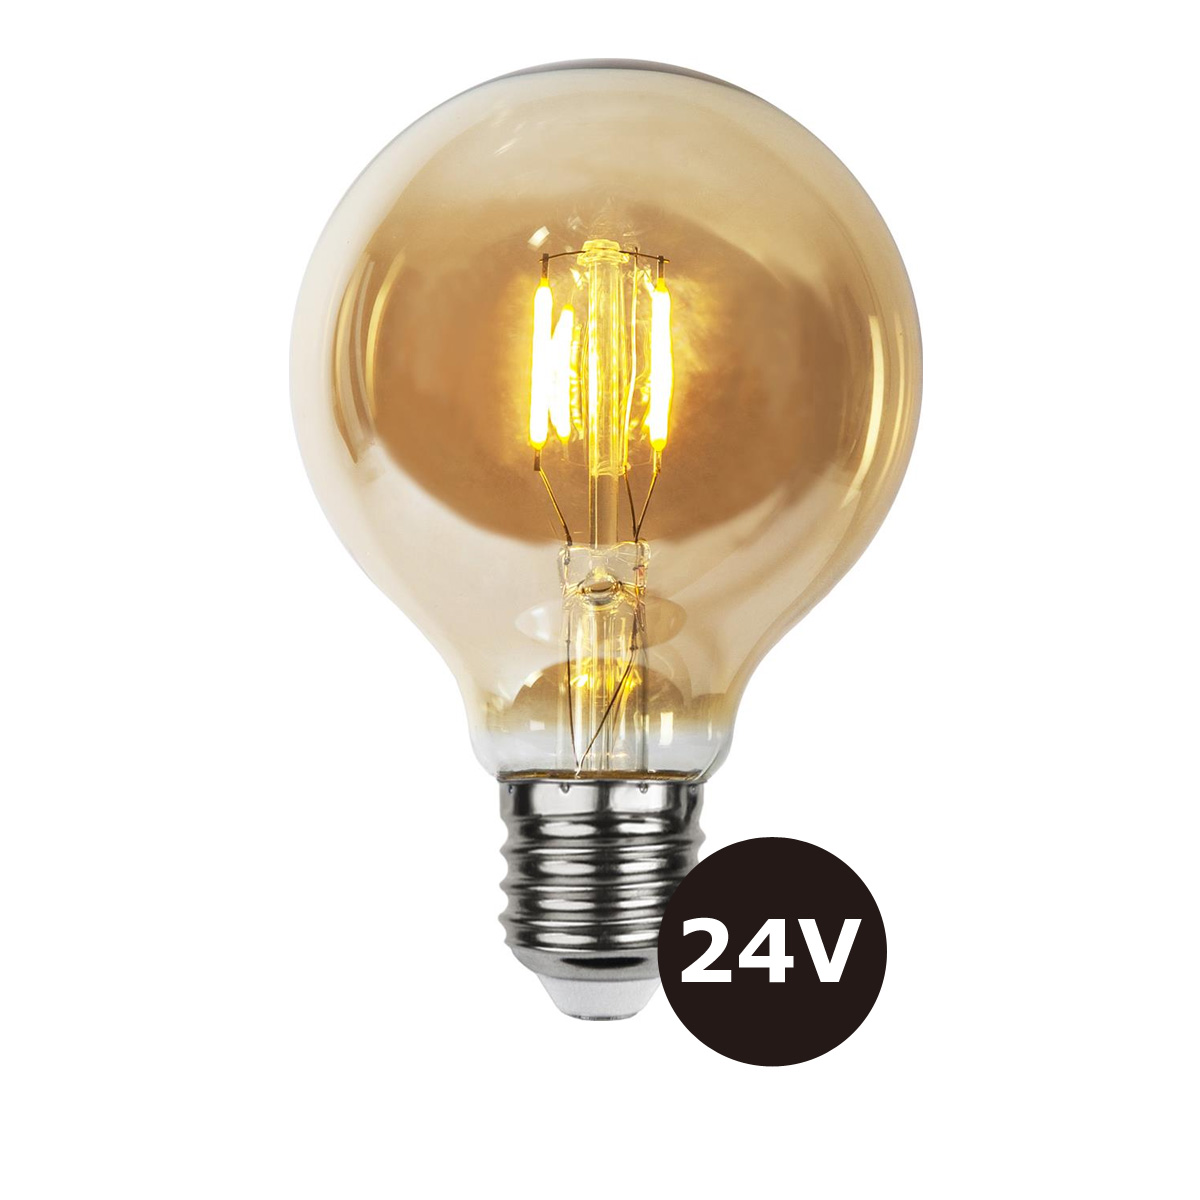 4er Set - 24V Leuchtmittel - 8cm - amber - 28lm - 2500K - E27